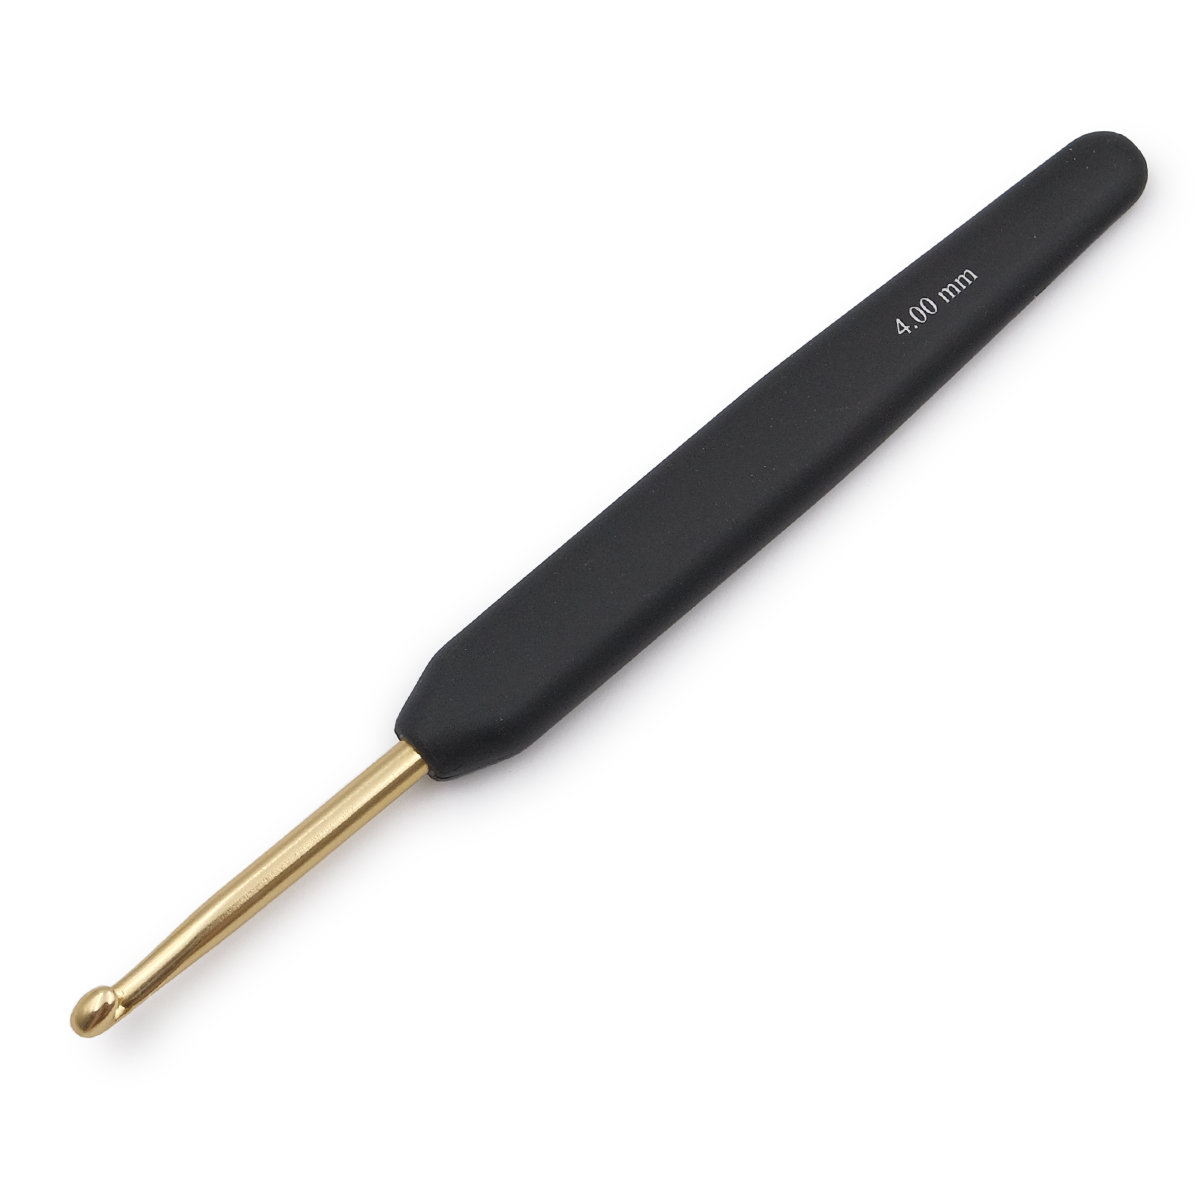 Крючок для вязания с эрг ручкой BasixAluminum 4мм, алюминий, золото/черный, KnitPro